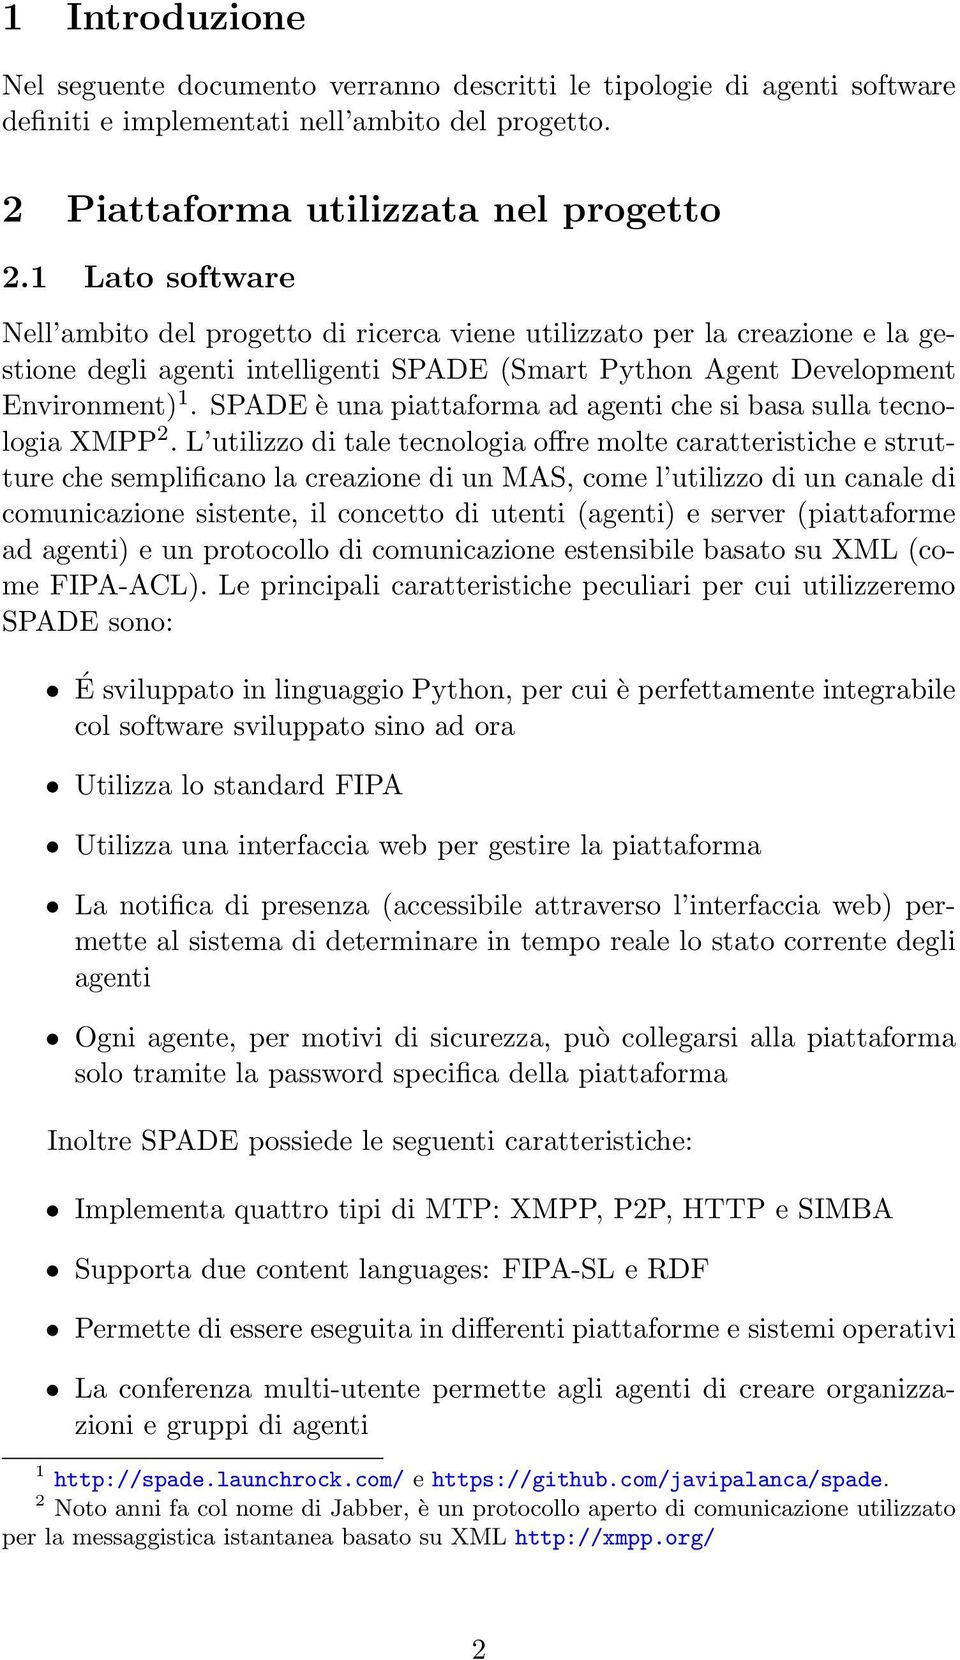 SPADE è una piattaforma ad agenti che si basa sulla tecnologia XMPP 2.